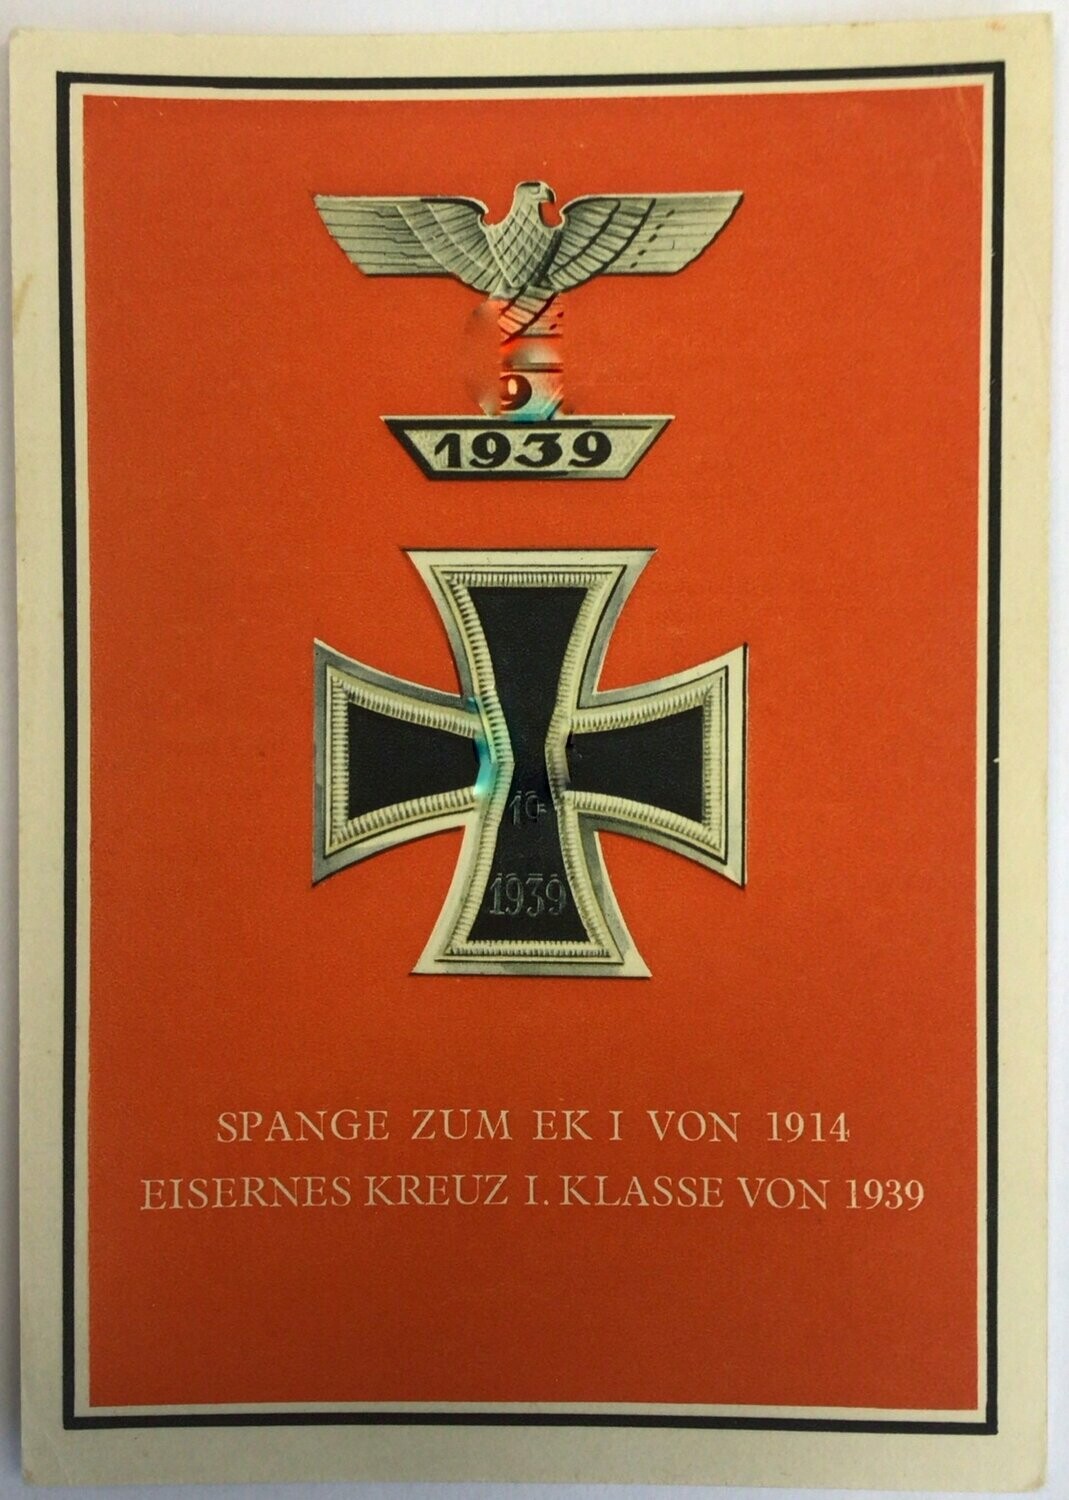 Propagandapostkarte: Die Kriegsorden des großdeutschen Reiches - Eisernes Kreuz 1. Klasse